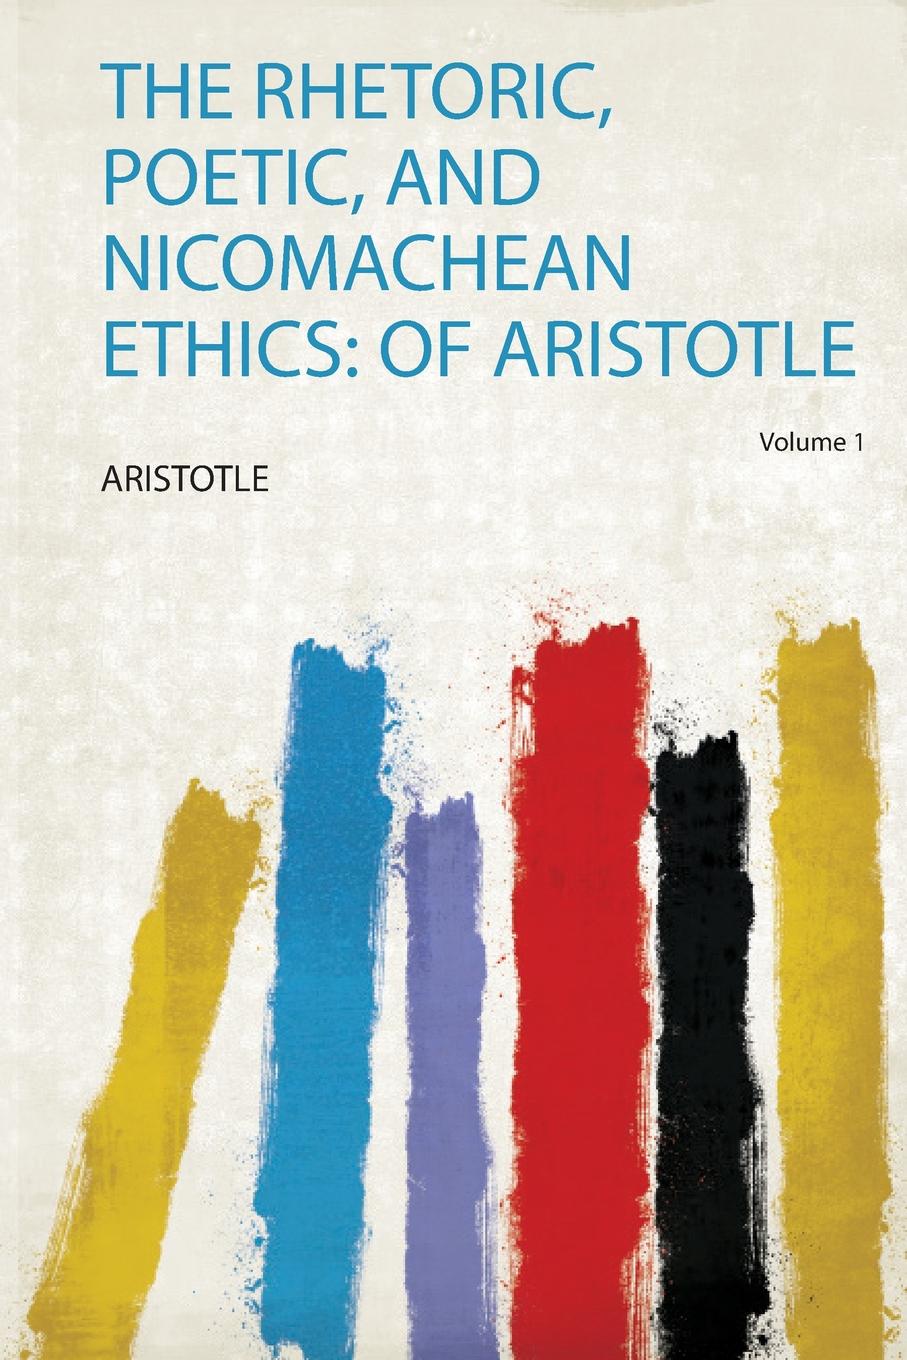 The Rhetoric, Poetic, and Nicomachean Ethics. of Aristotle